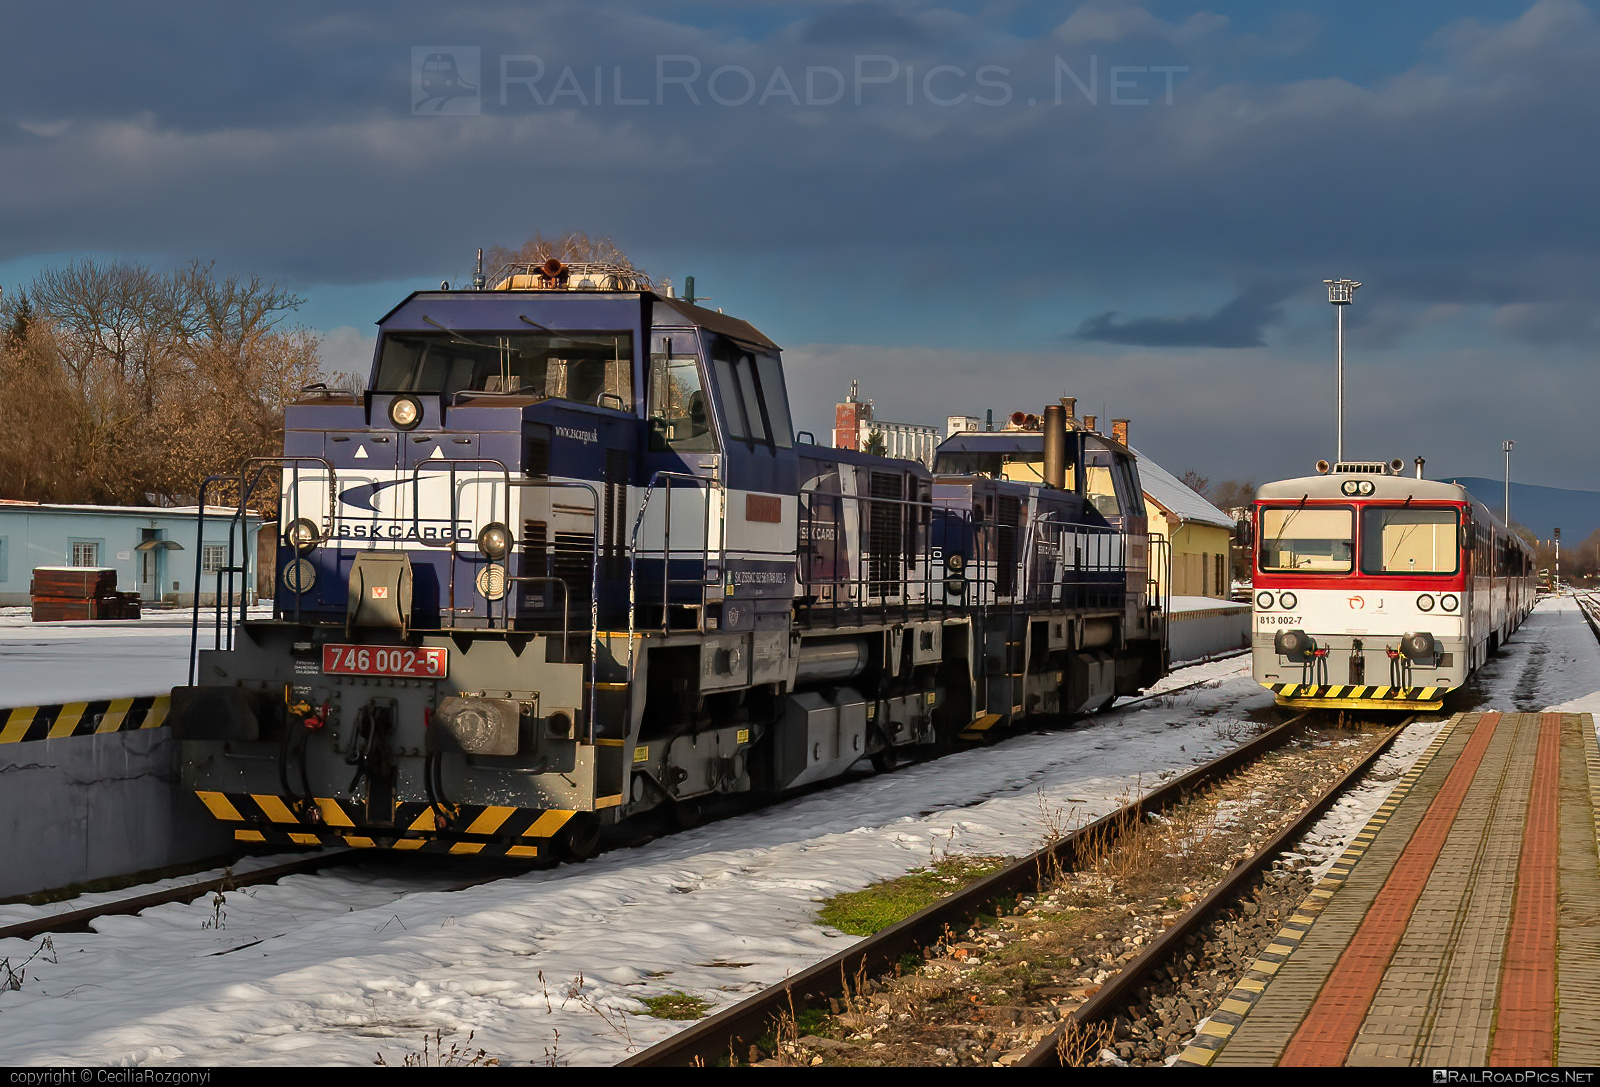 ŽOS Zvolen Class 746 - 746 002-5 operated by Železničná Spoločnost' Cargo Slovakia a.s. #ZeleznicnaSpolocnostCargoSlovakia #locomotive746 #zoszvolen #zoszvolen746 #zsskcClass746 #zsskcargo